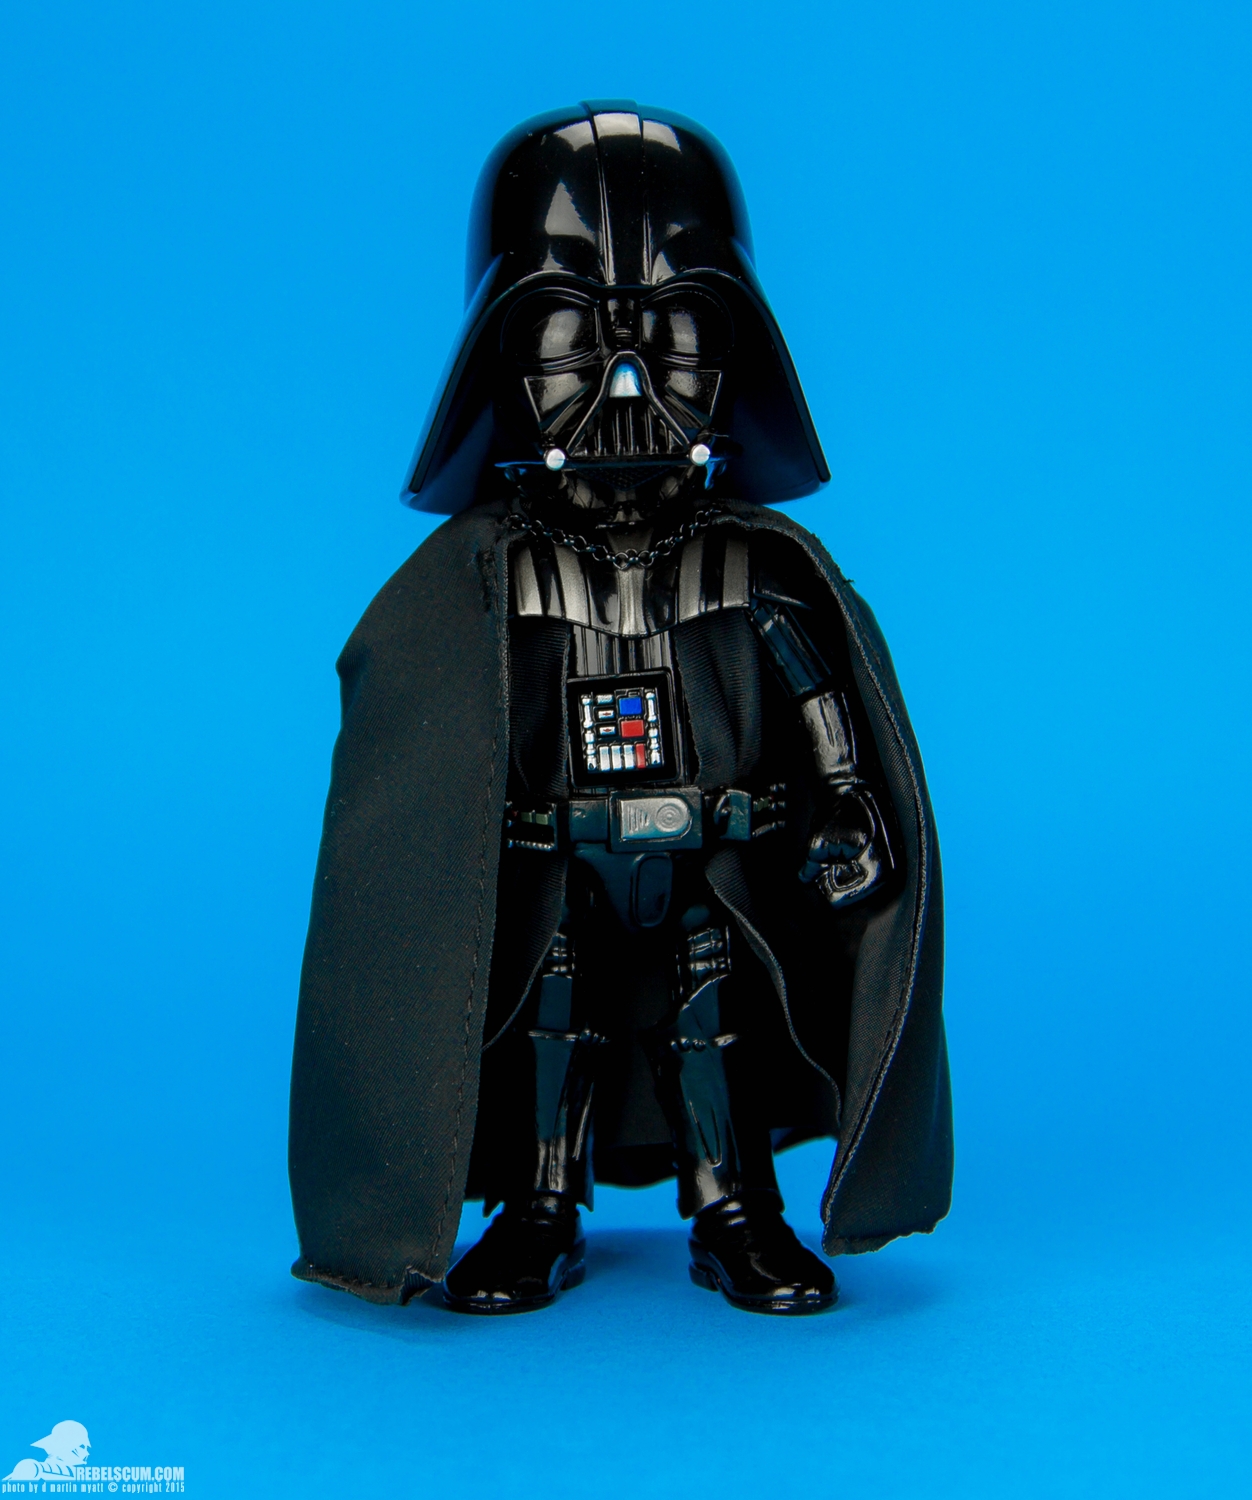 HMF011-Darth-Vader-Herocross-Hybrid-Metal-Figuration-001.jpg